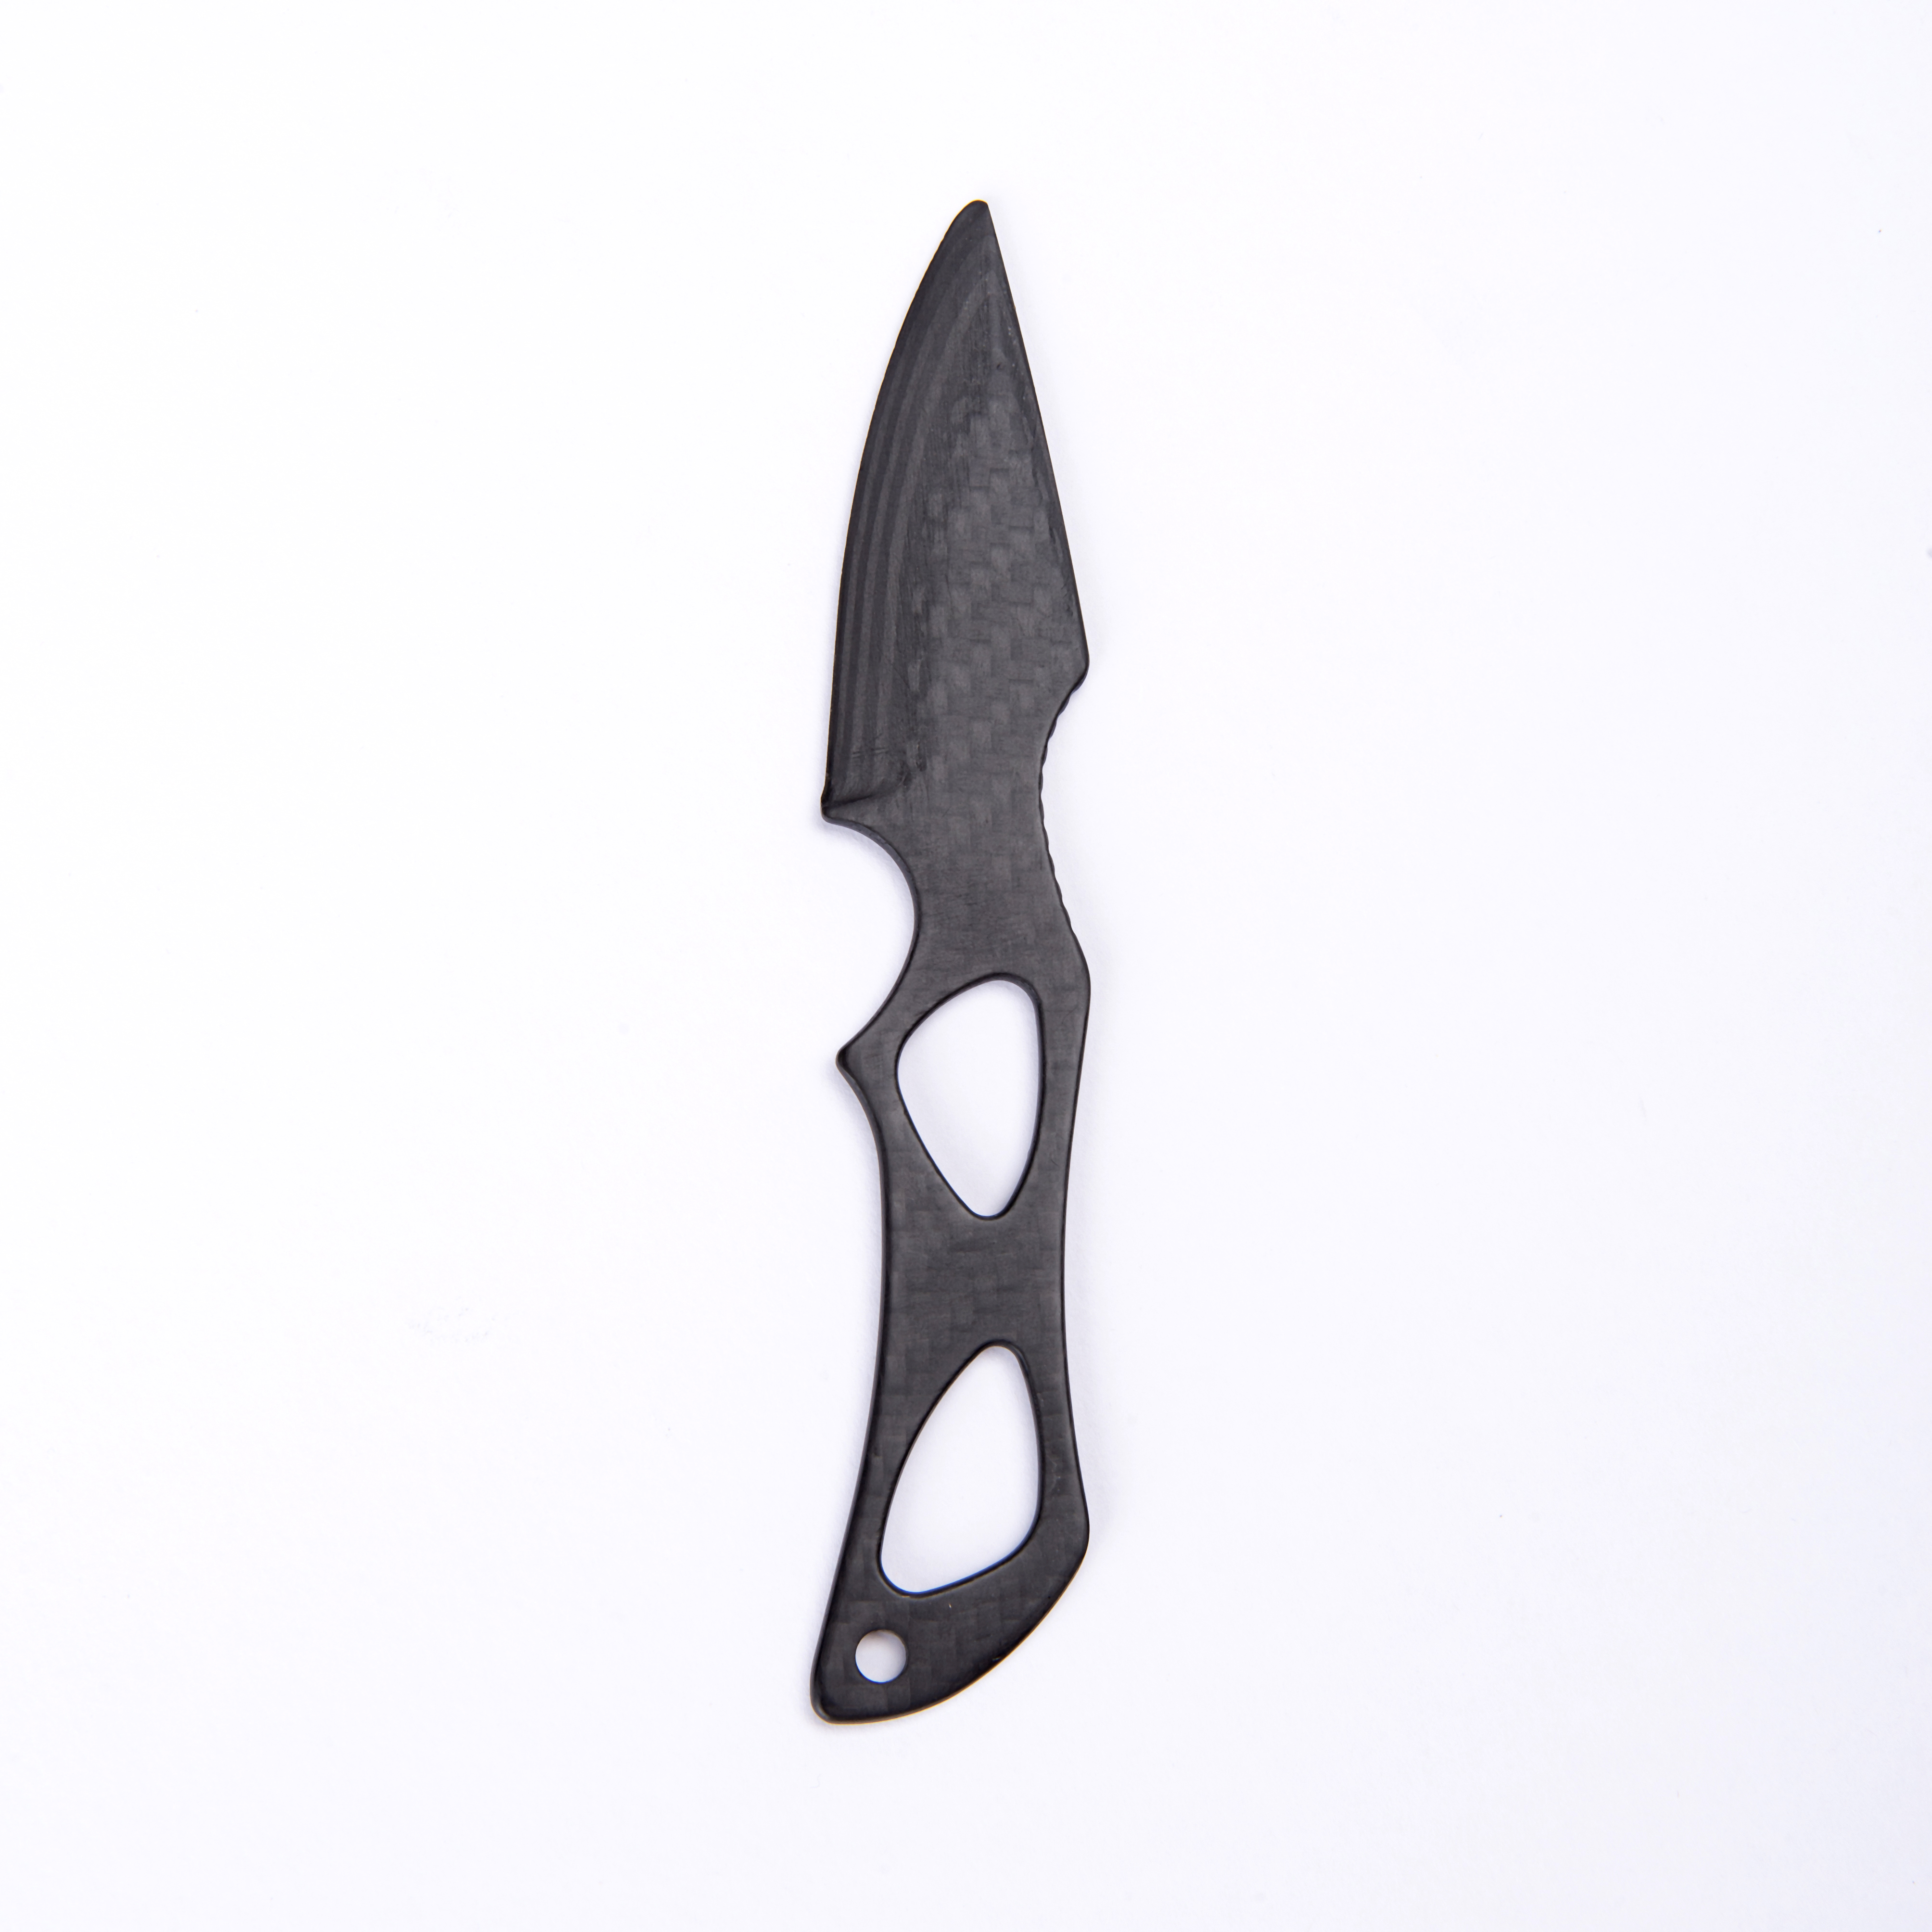 Carbon fiber knife